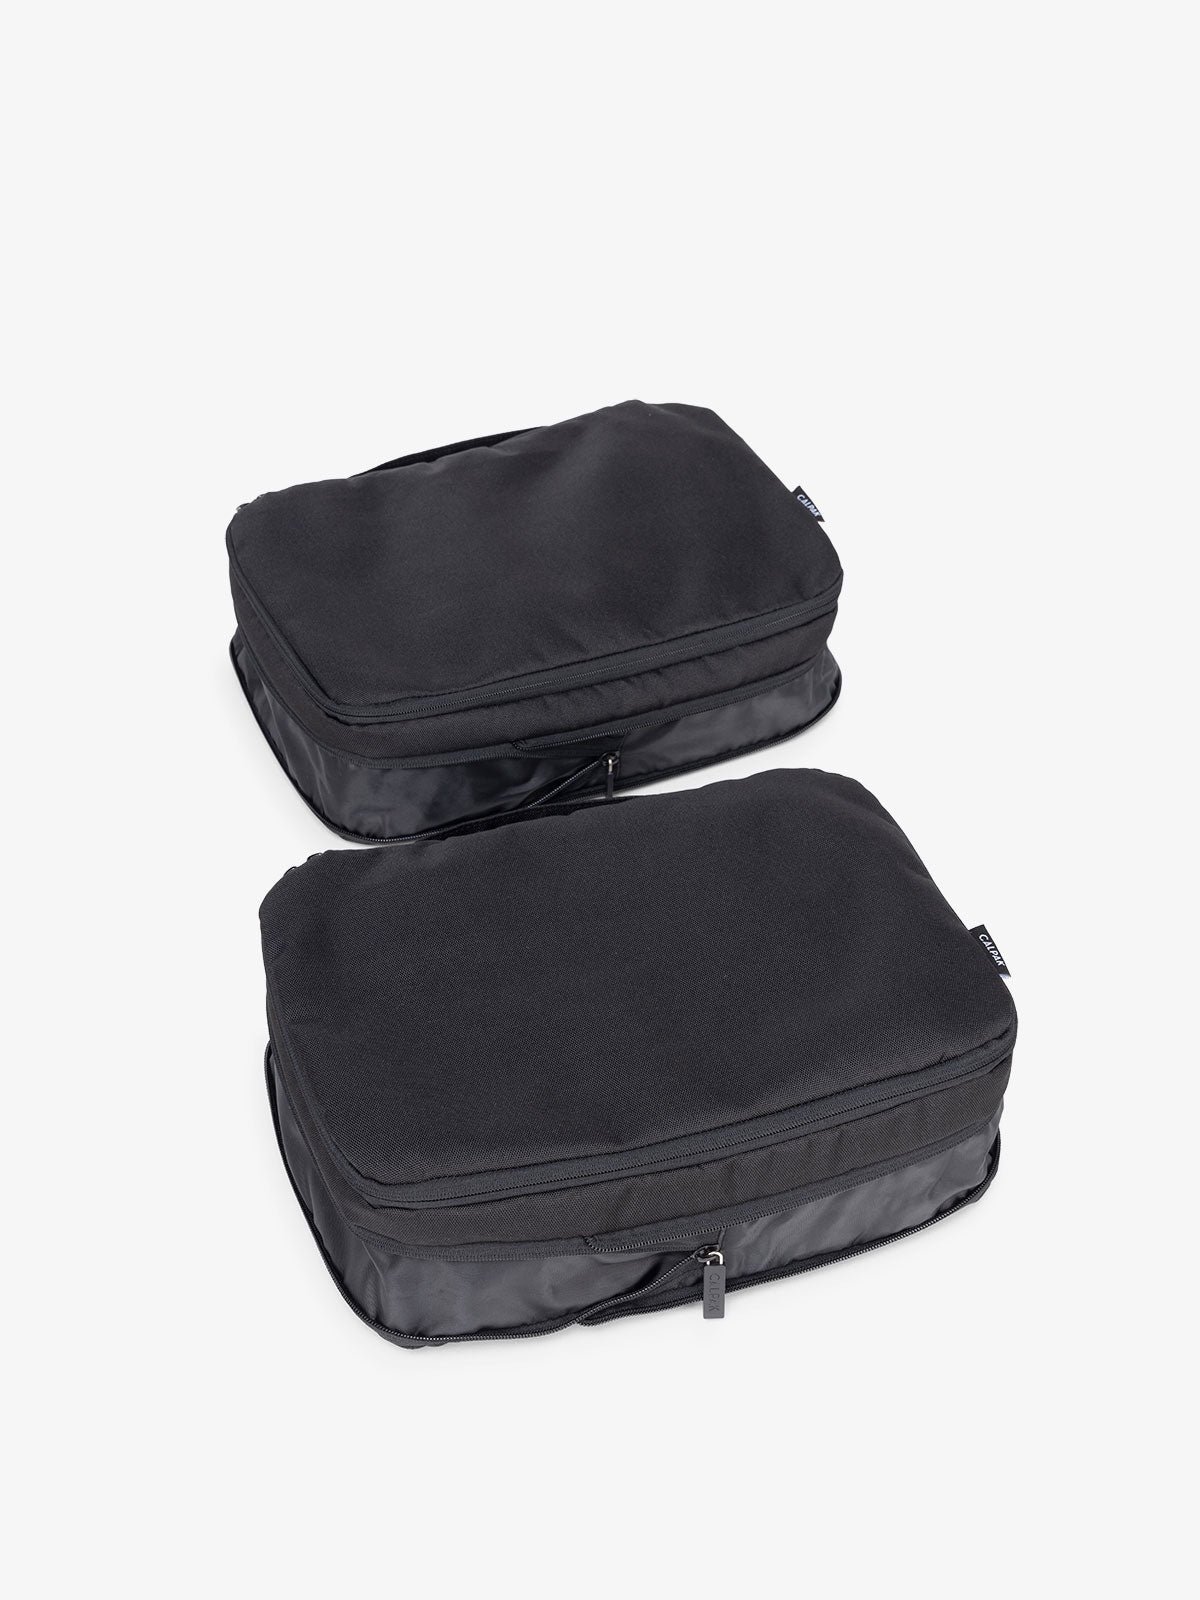 pack all Compression Packing Bag for Travel (Orange L) 